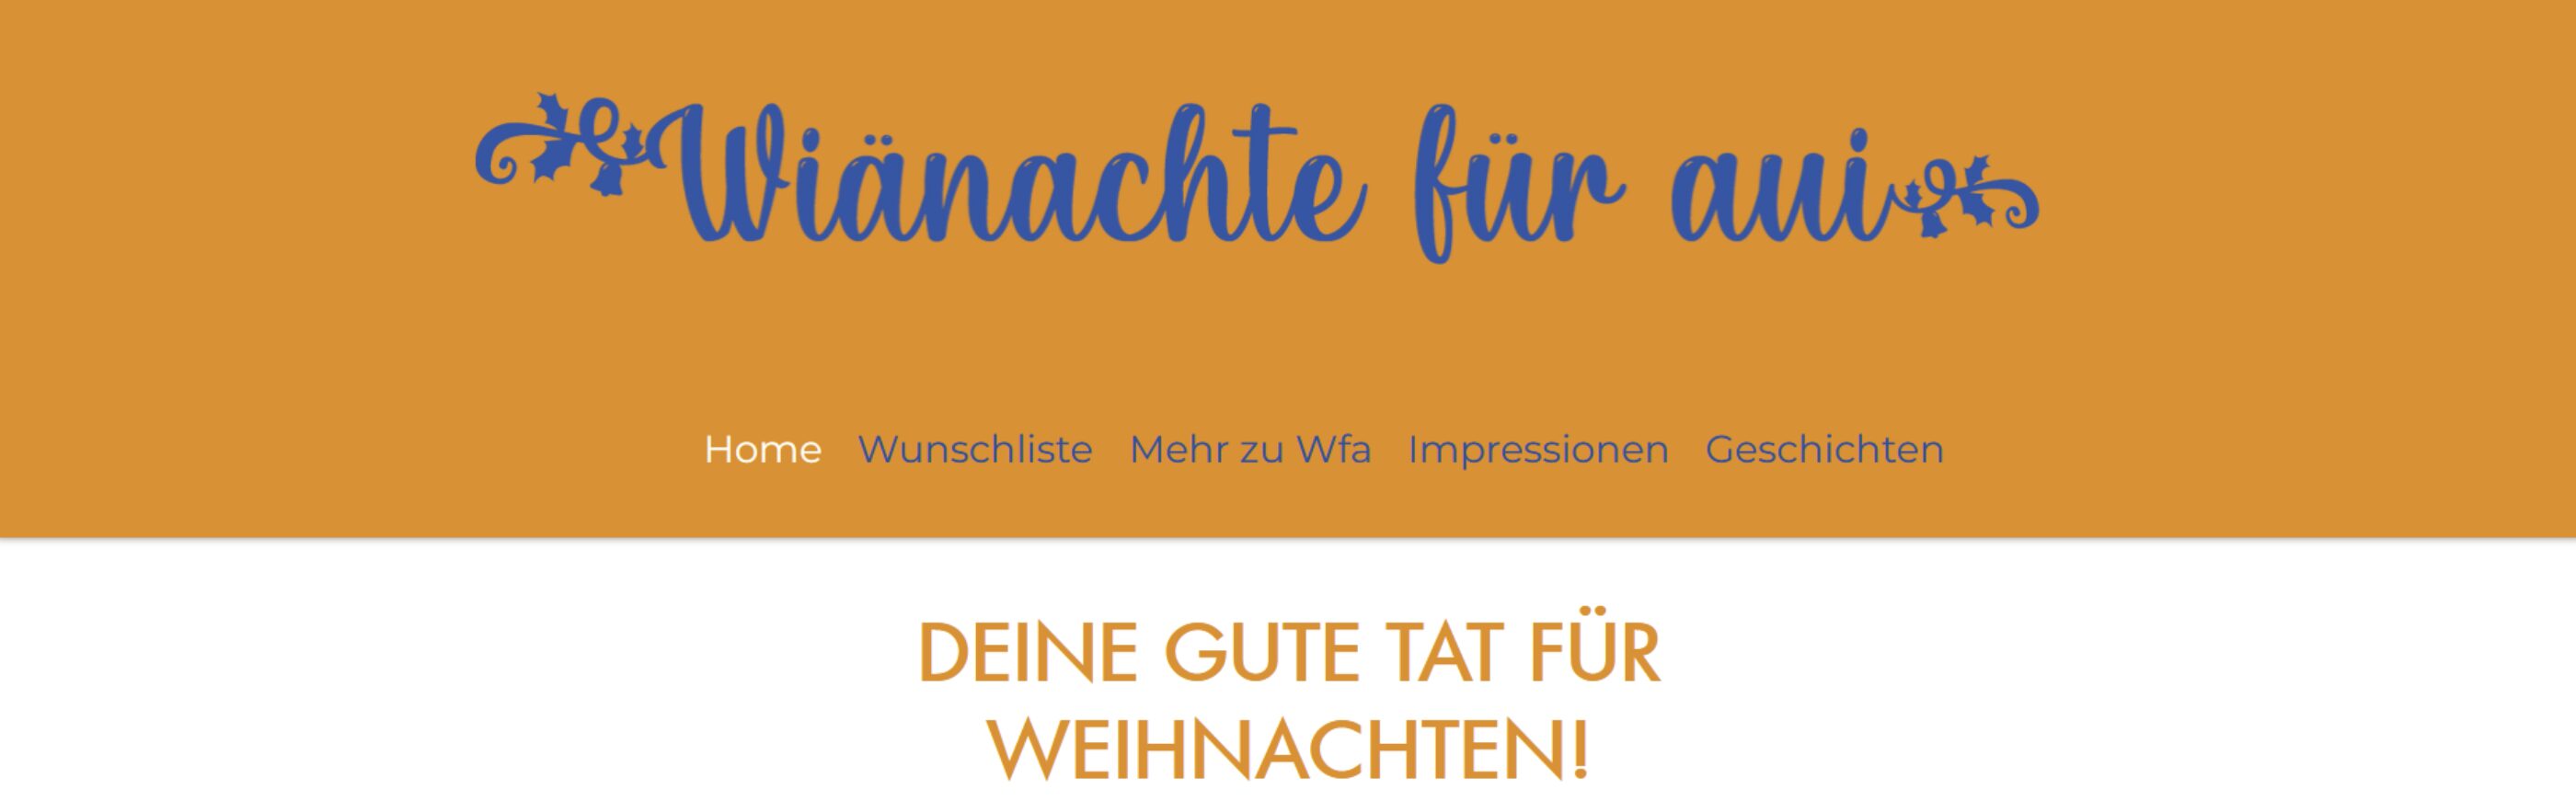 Titelseite www wiänachtefüraui ch